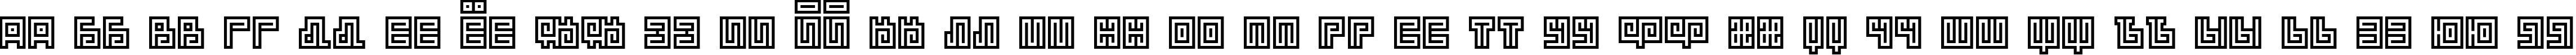 Пример написания русского алфавита шрифтом BM spiral Cap Cyr